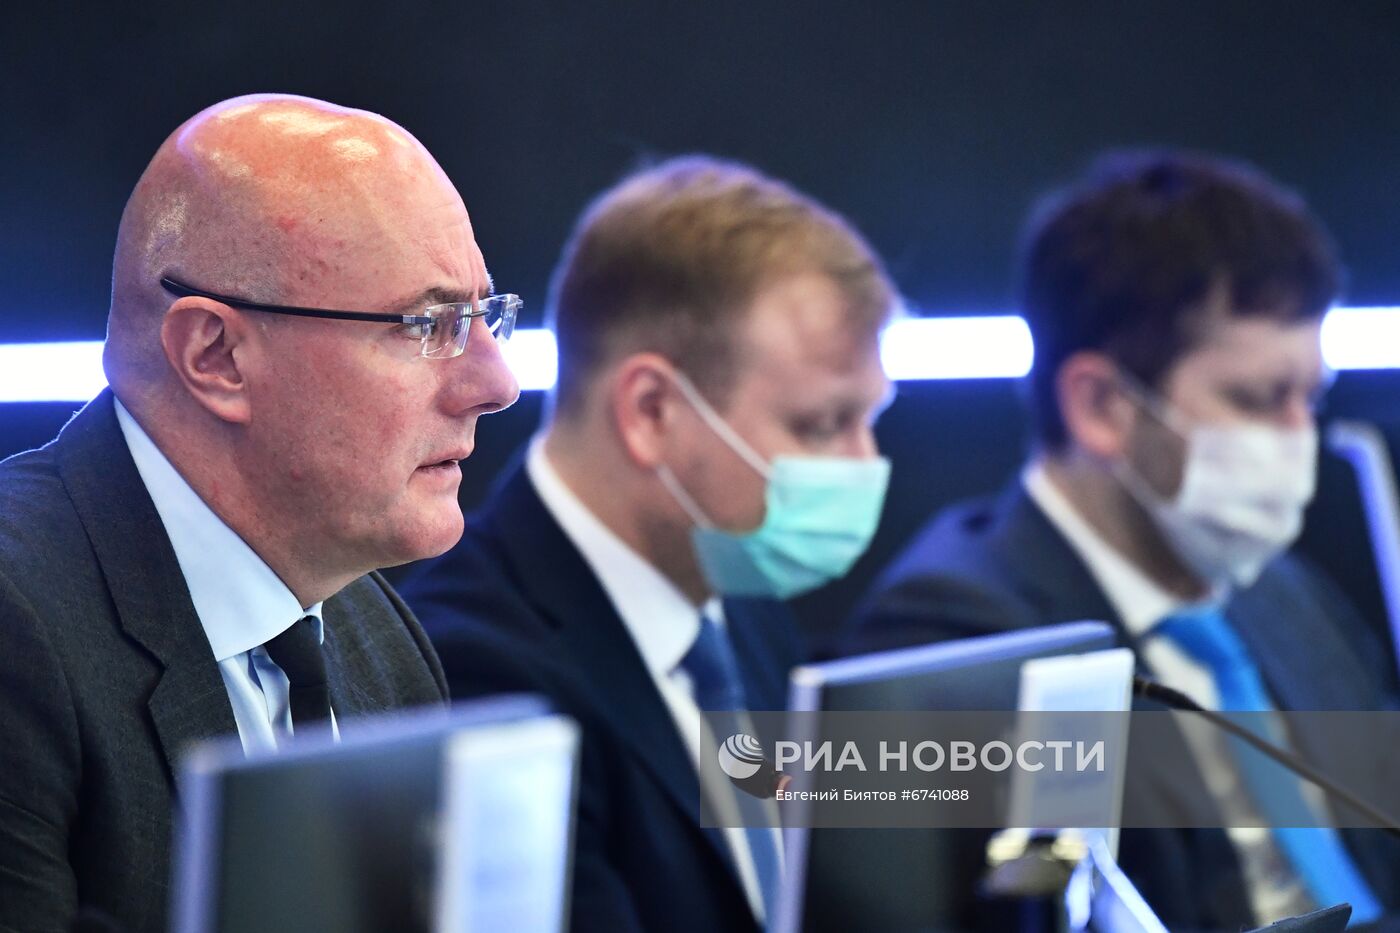 Вице-премьер правительства РФ Д. Чернышенко провел совещание по вопросу работы единой службы 122